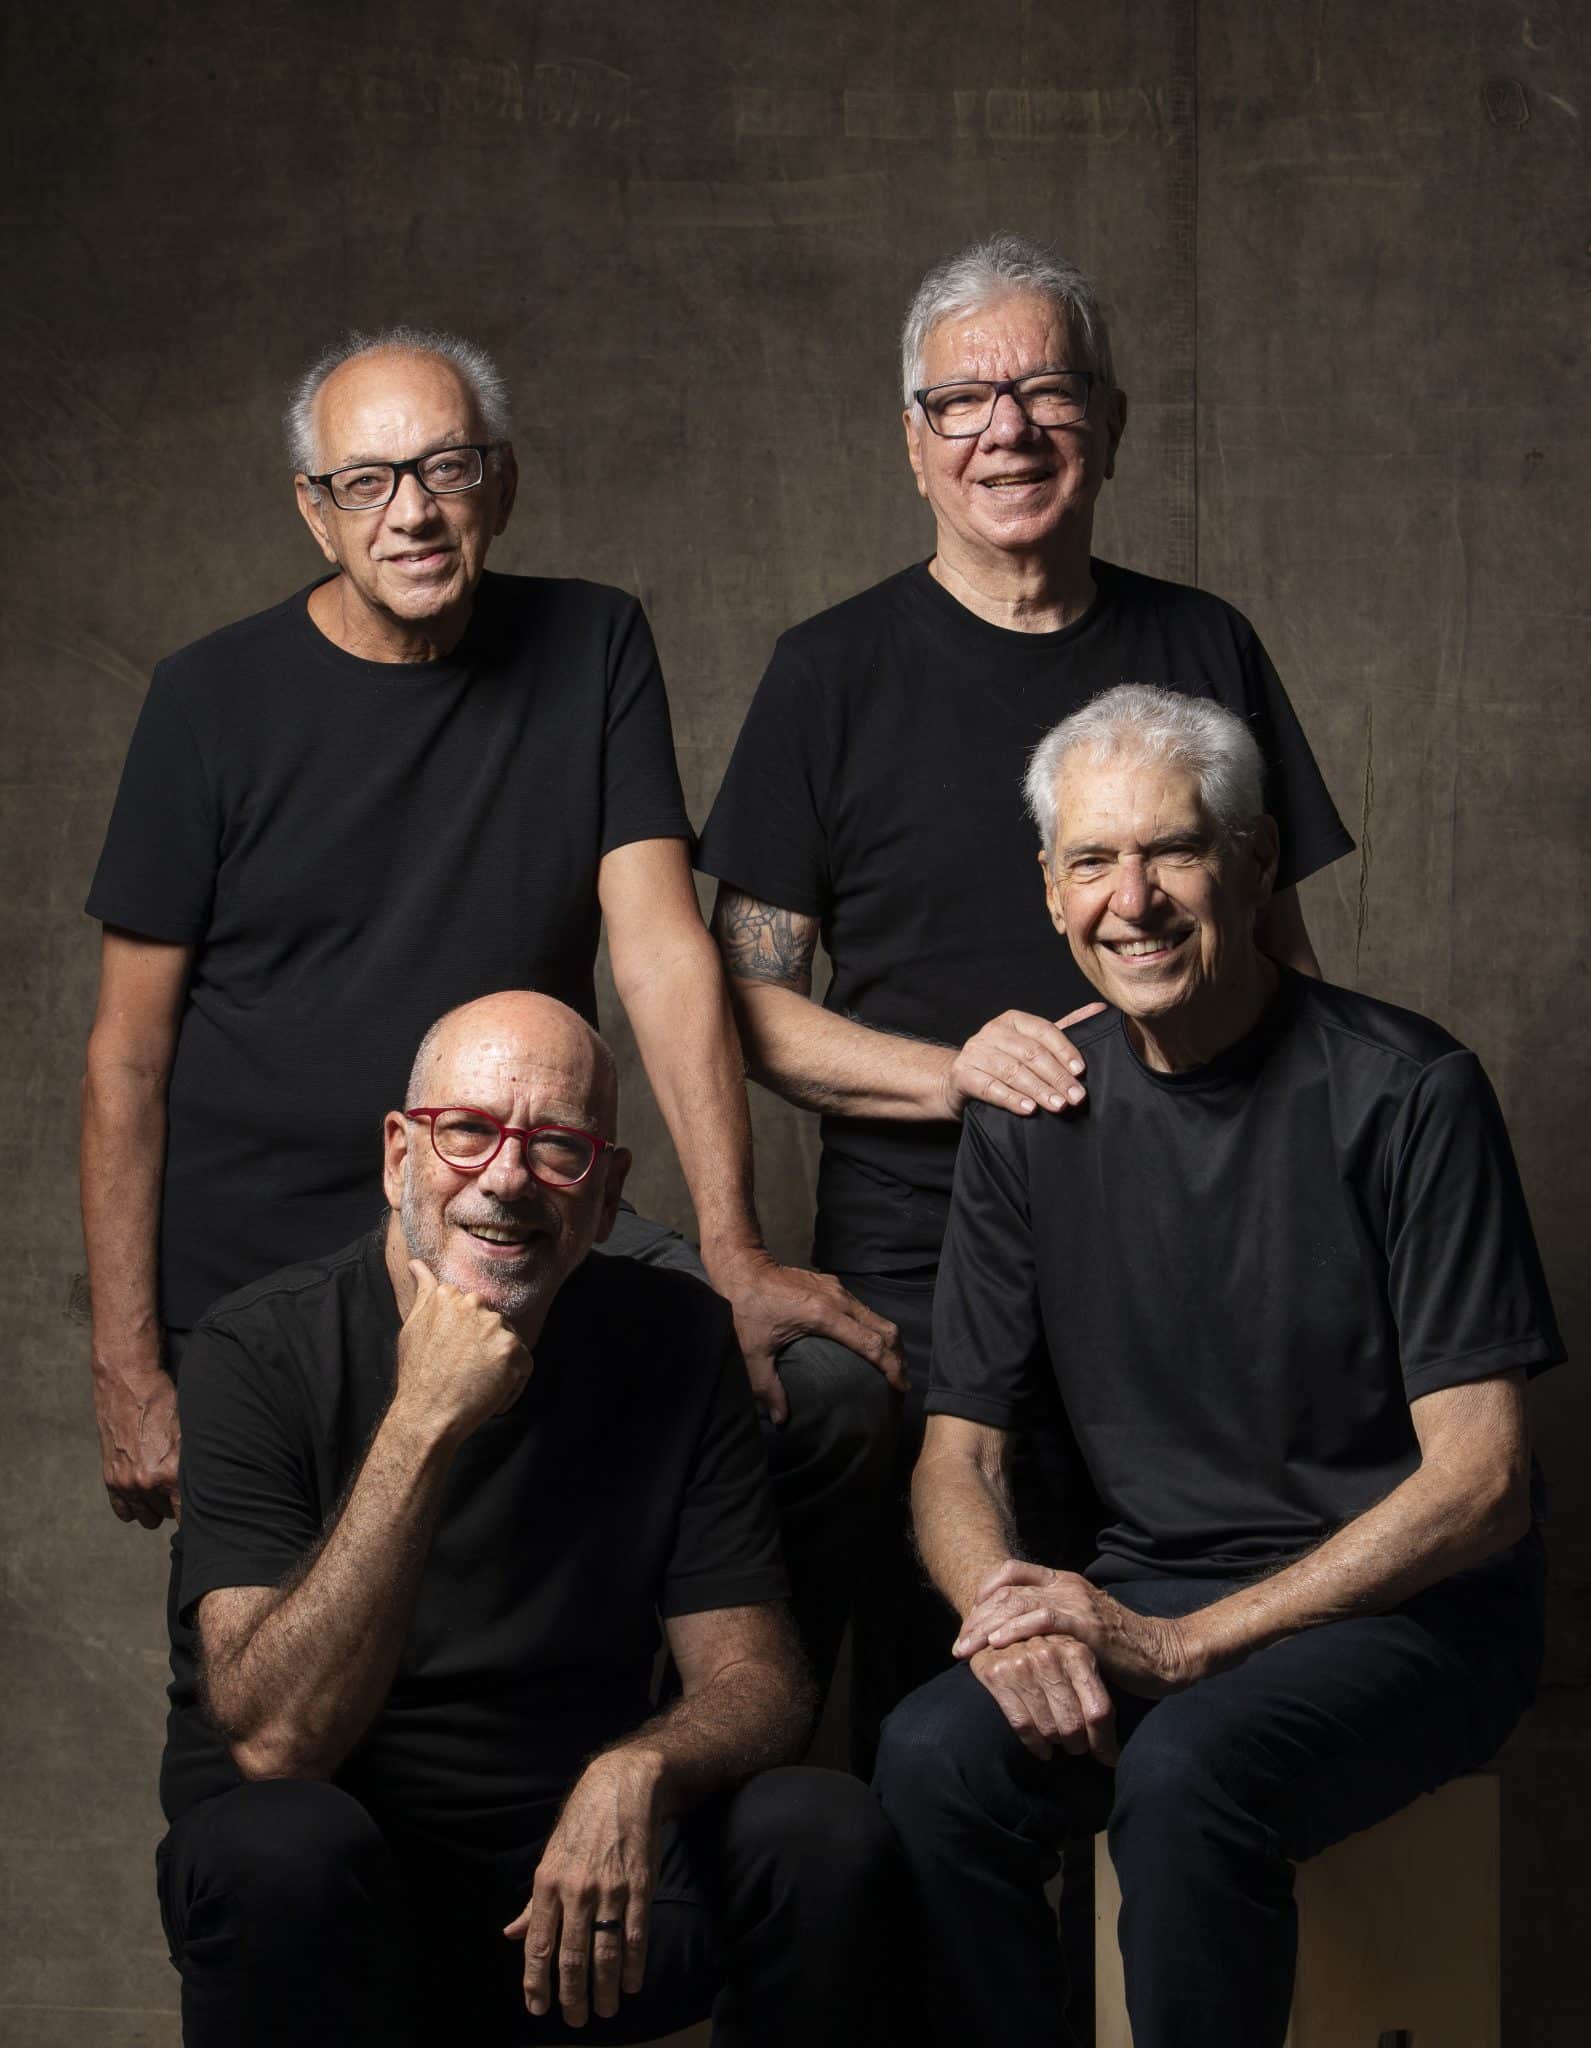 revistaprosaversoearte.com - MPB4 - 60 anos de MPB: Seis décadas festejadas com novo álbum e show no Teatro Riachuelo